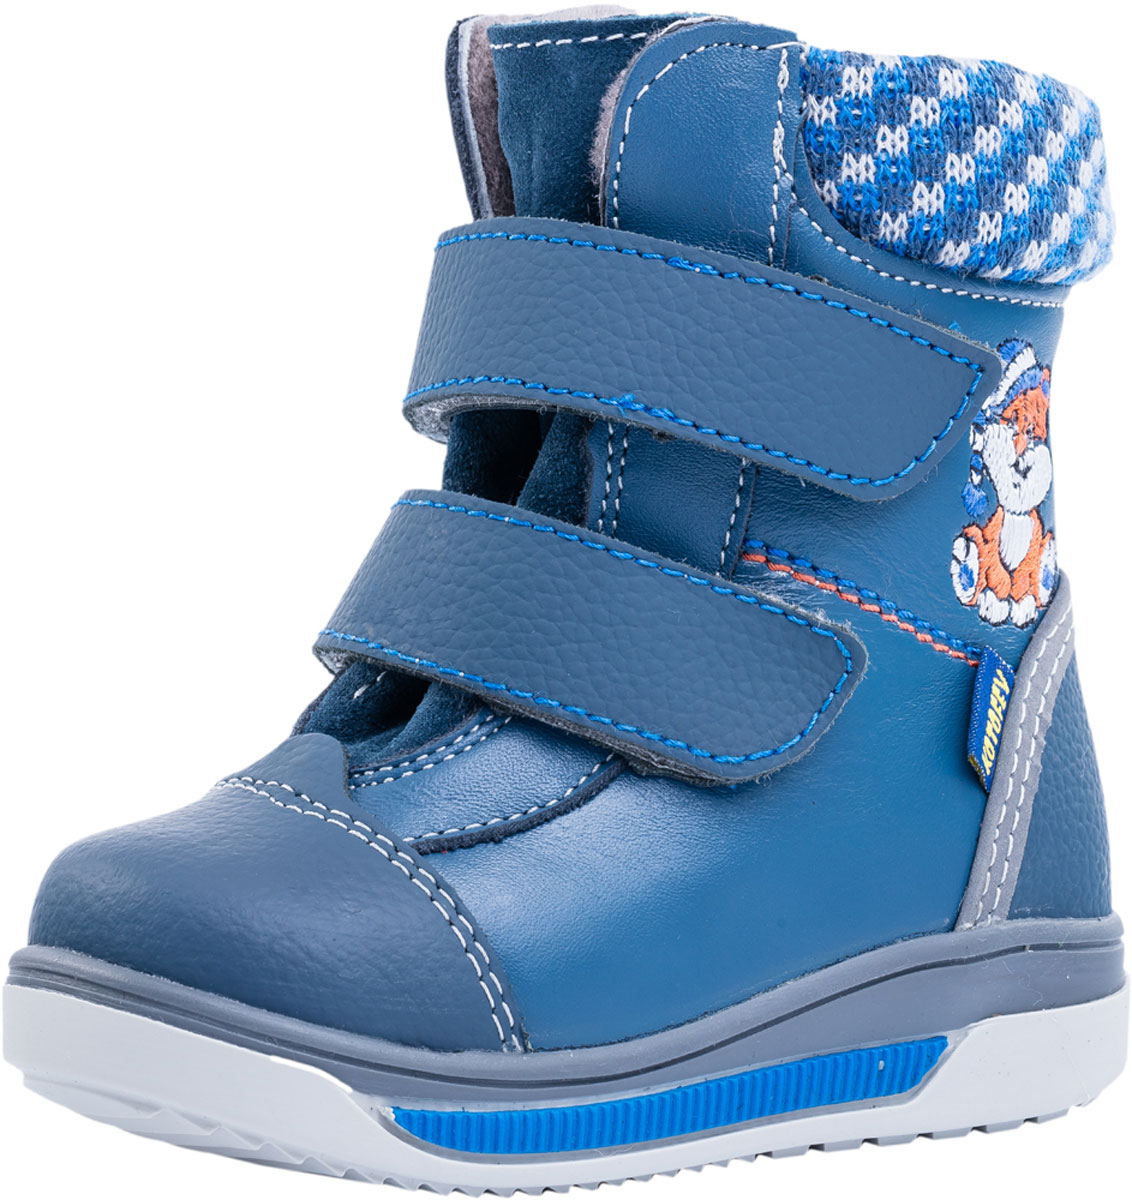 Ботинки для мальчика Котофей, цвет: синий. 152187-51. Размер 24